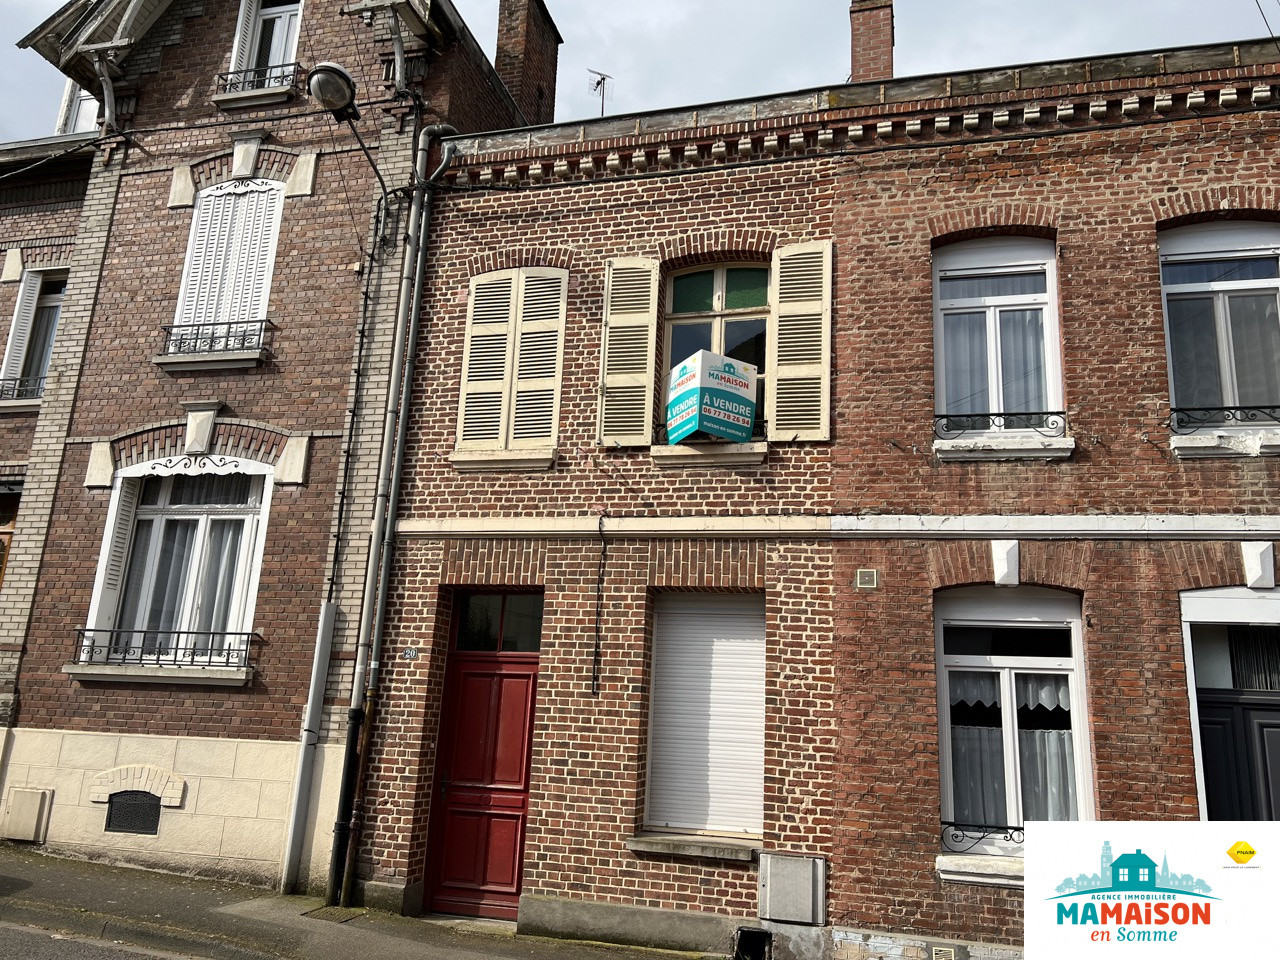 Immo80 – L'immobilier à Amiens et dans la Somme-Centre ville Albert, maison à rénover, 85,5 m2, 4 pièces, 2 chambres, jardin clos sur terrain...